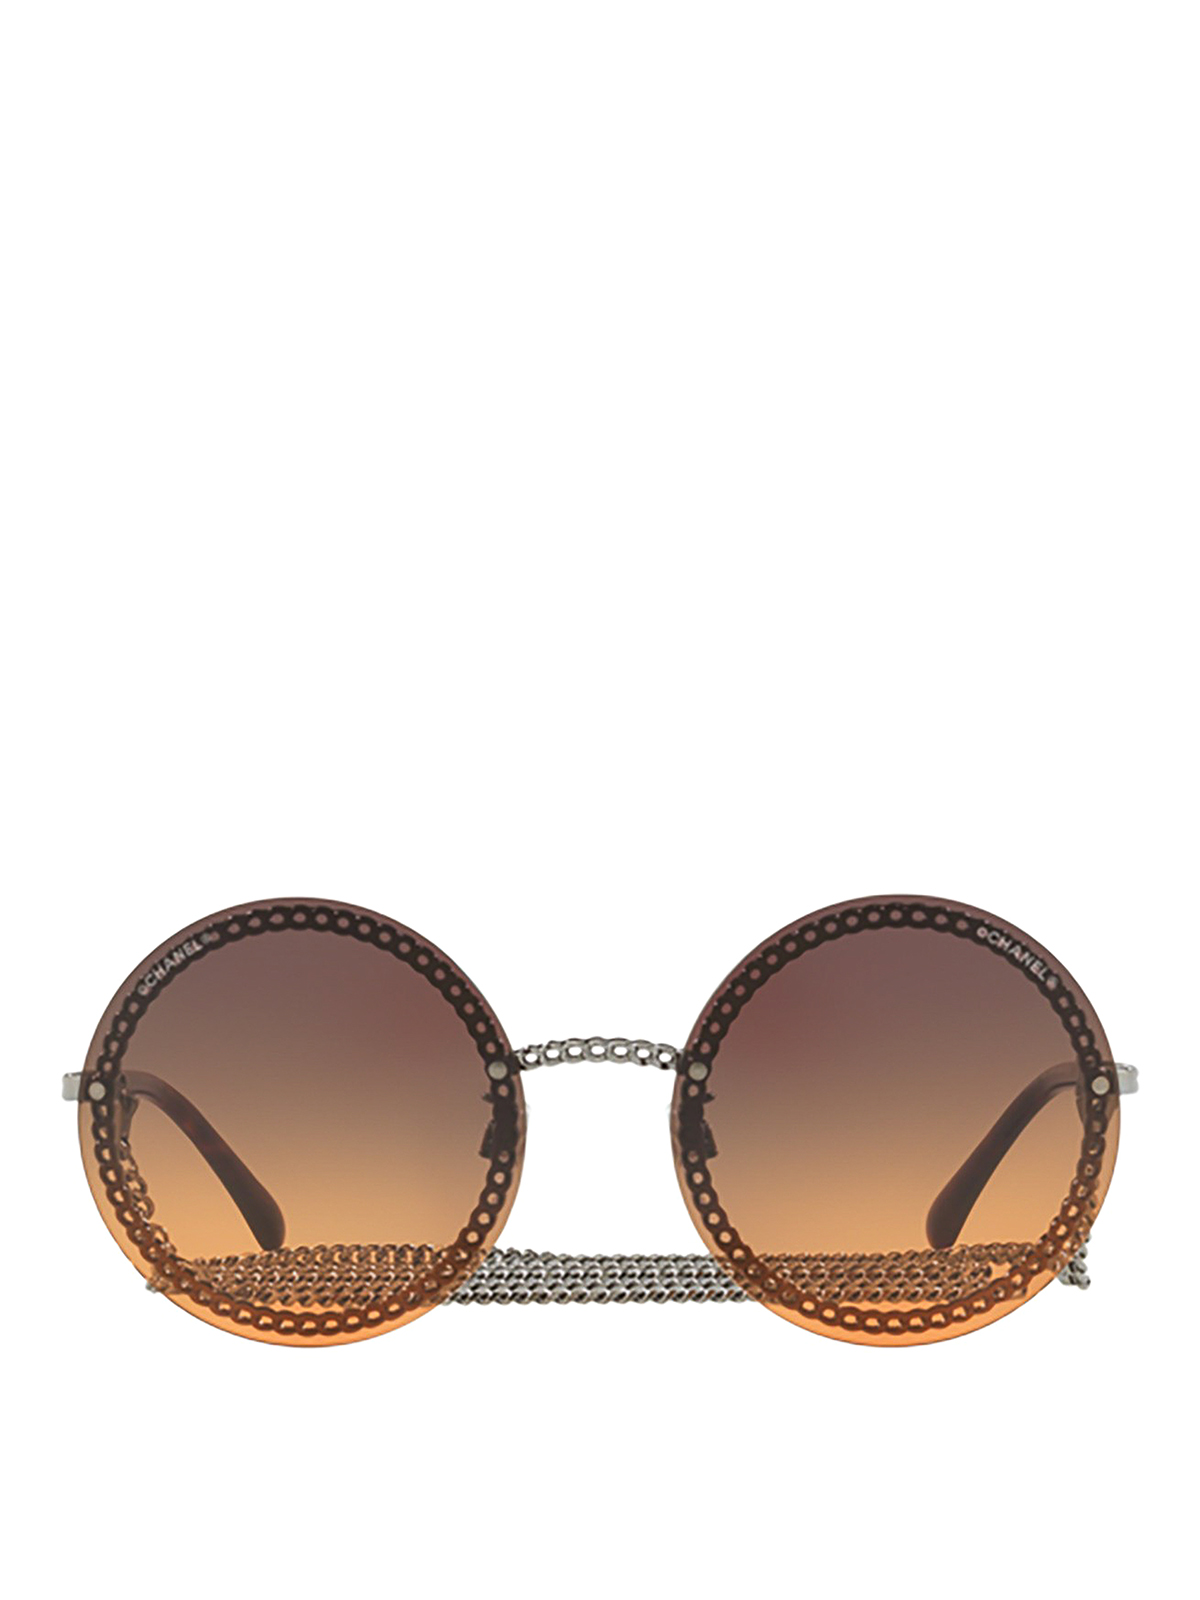 CHANEL  Accessories  Chanel Round Sunglasses Classic Gold  Poshmark